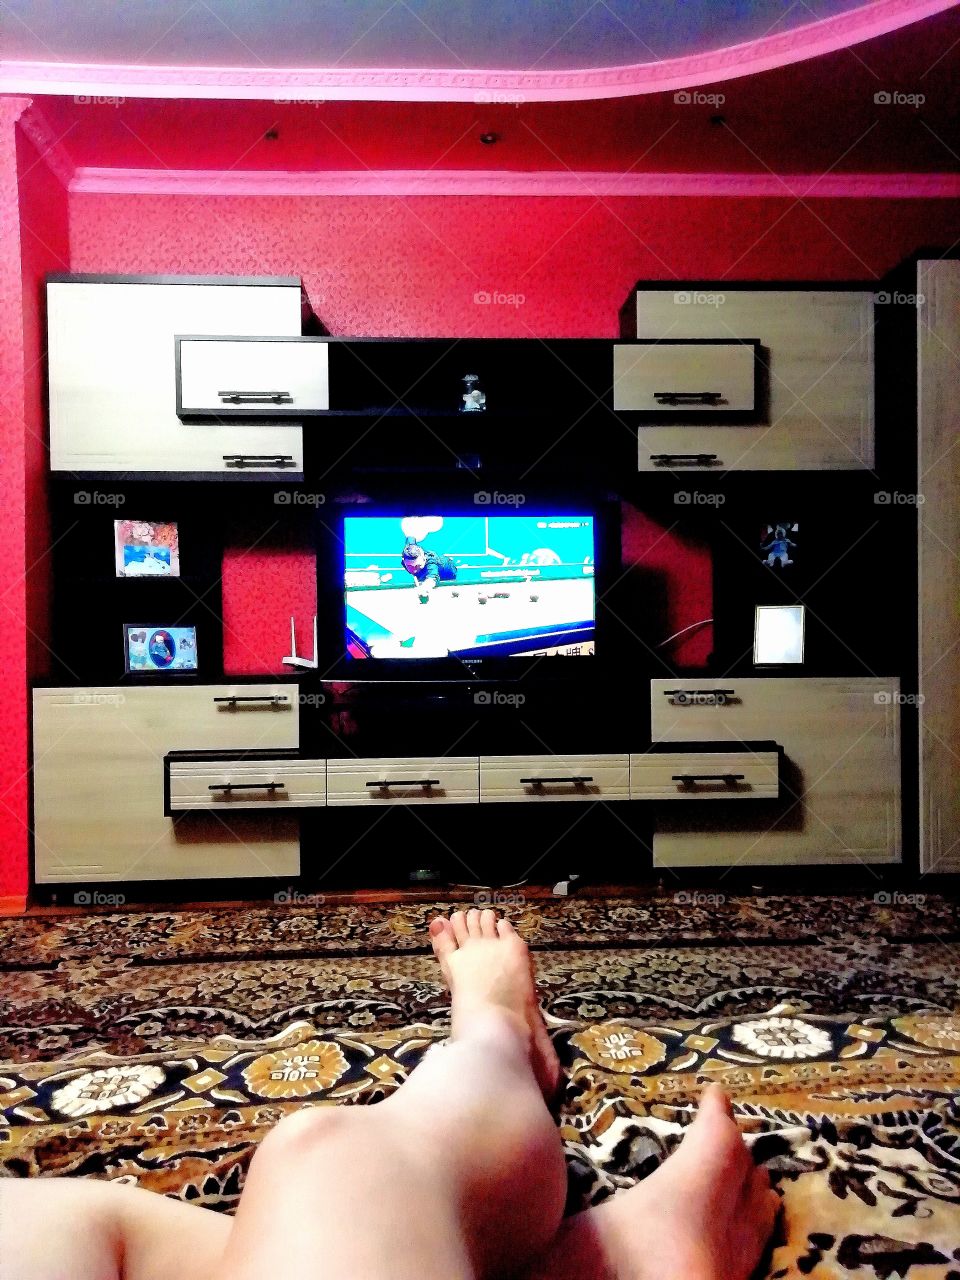 Мой зал. После тяжёлого дня очень приятно умоститься на уютном диванчике перед телевизором и посмотреть любимый снукер!!!